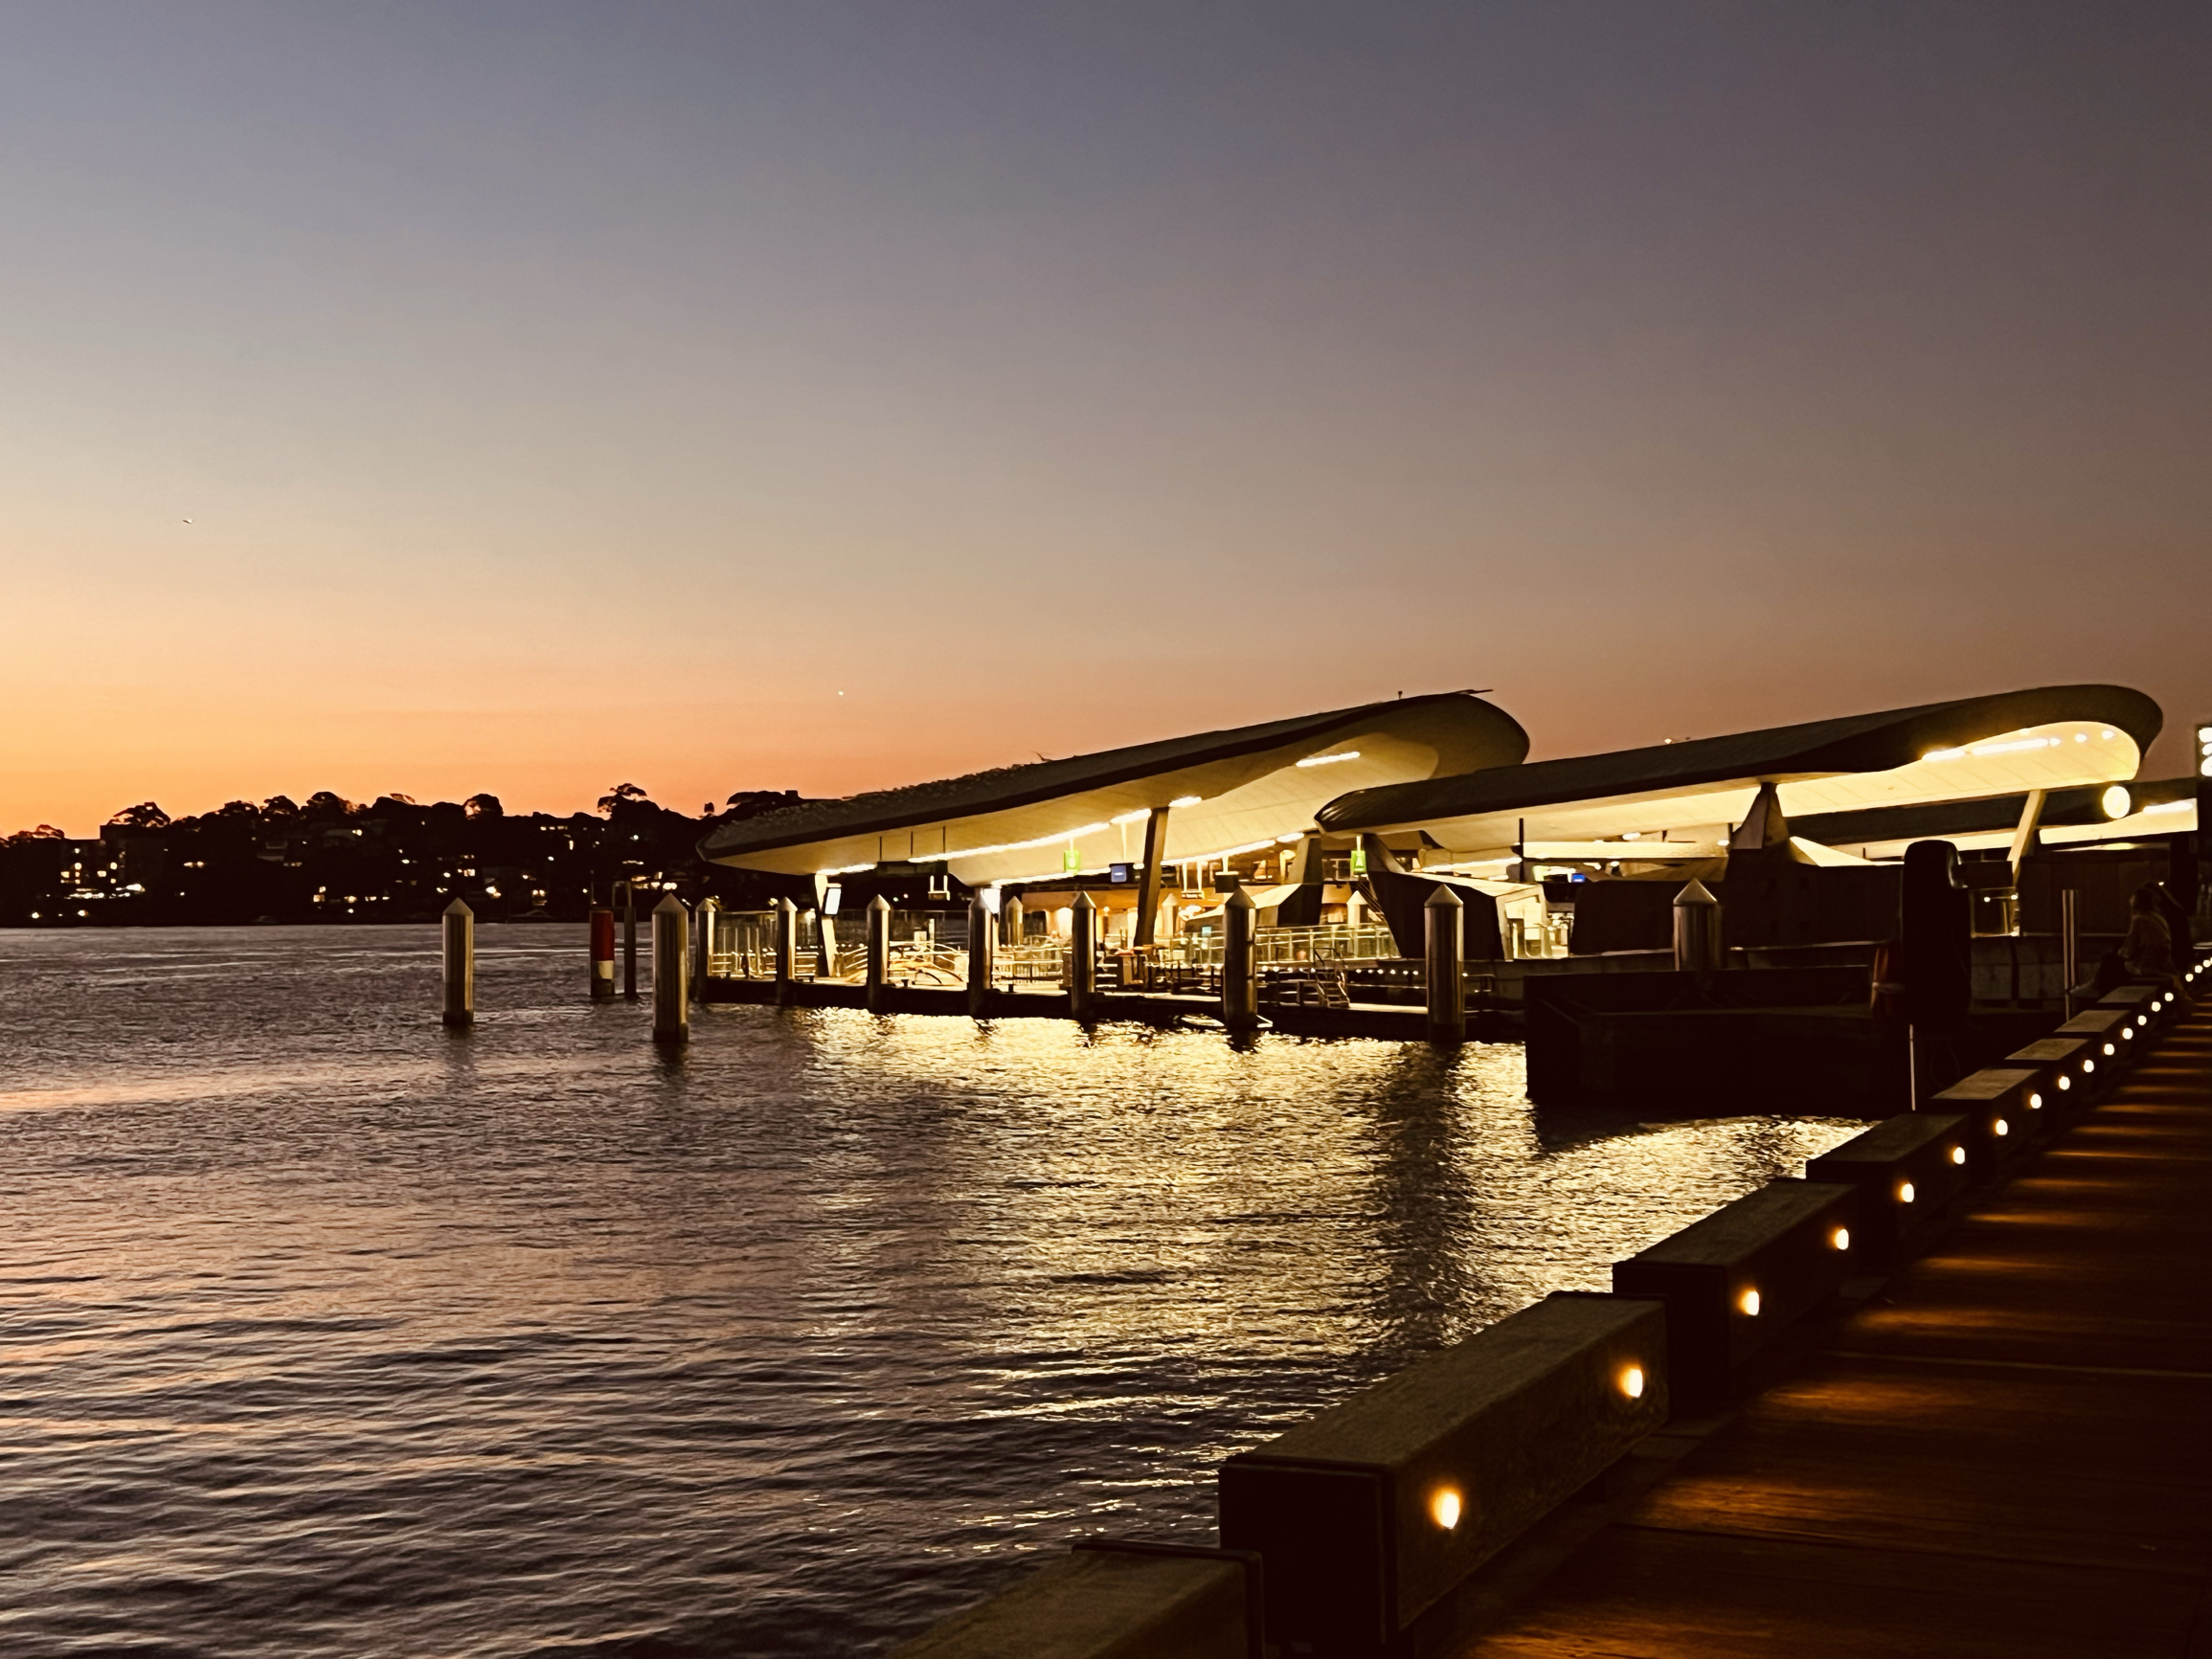 夜幕降临中的悉尼达令港码头愈发的神秘与浪漫